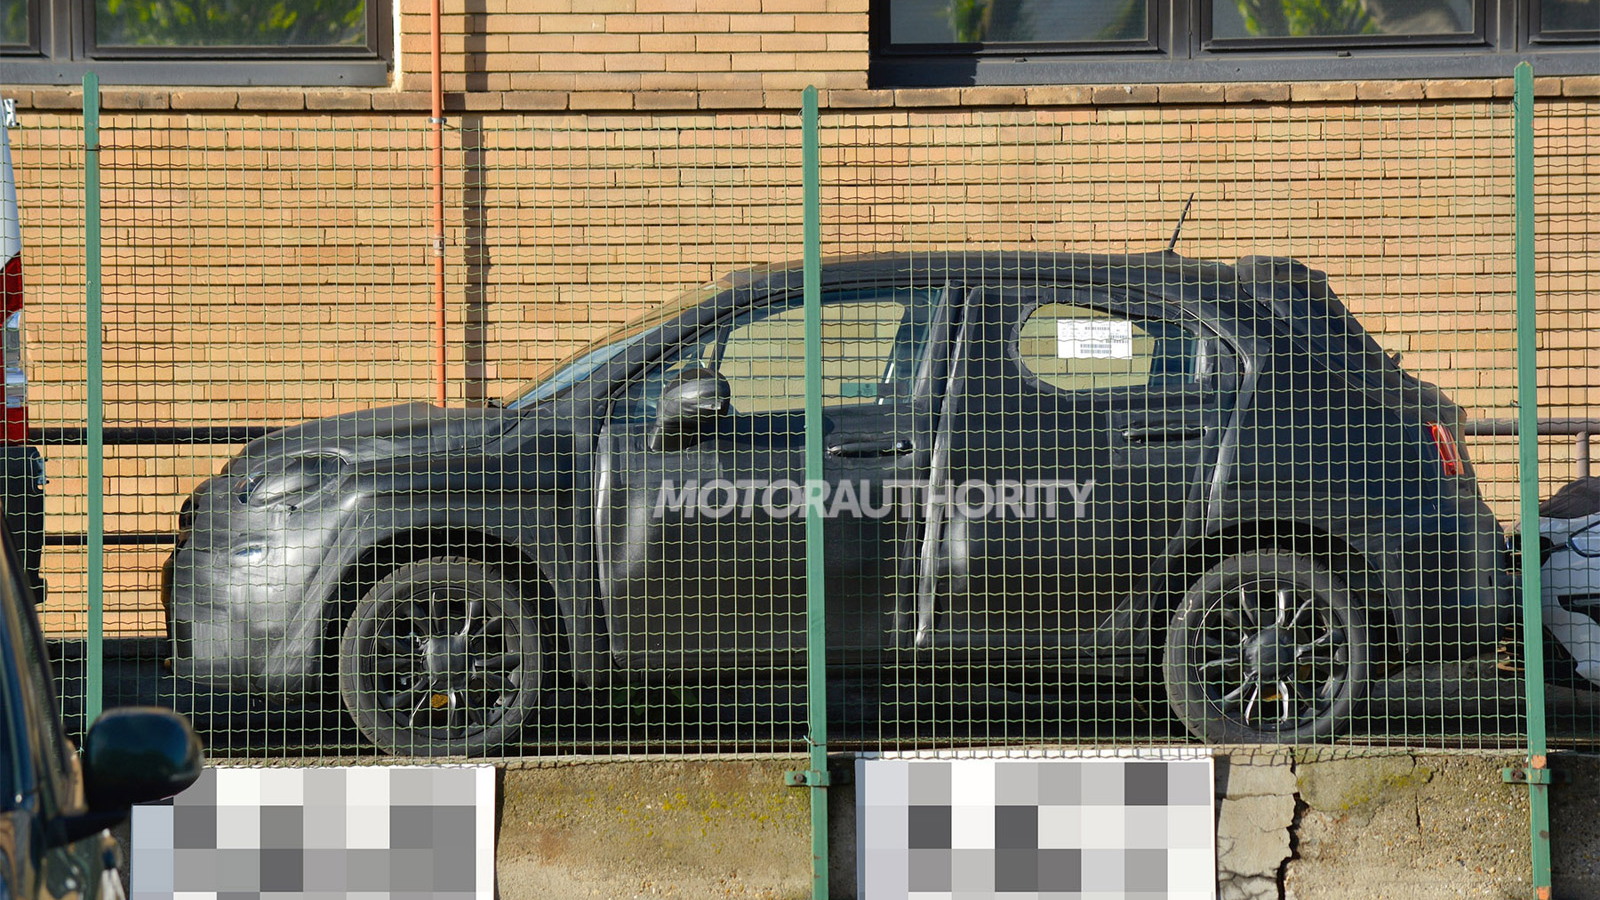 2016 Fiat 500X spy shots